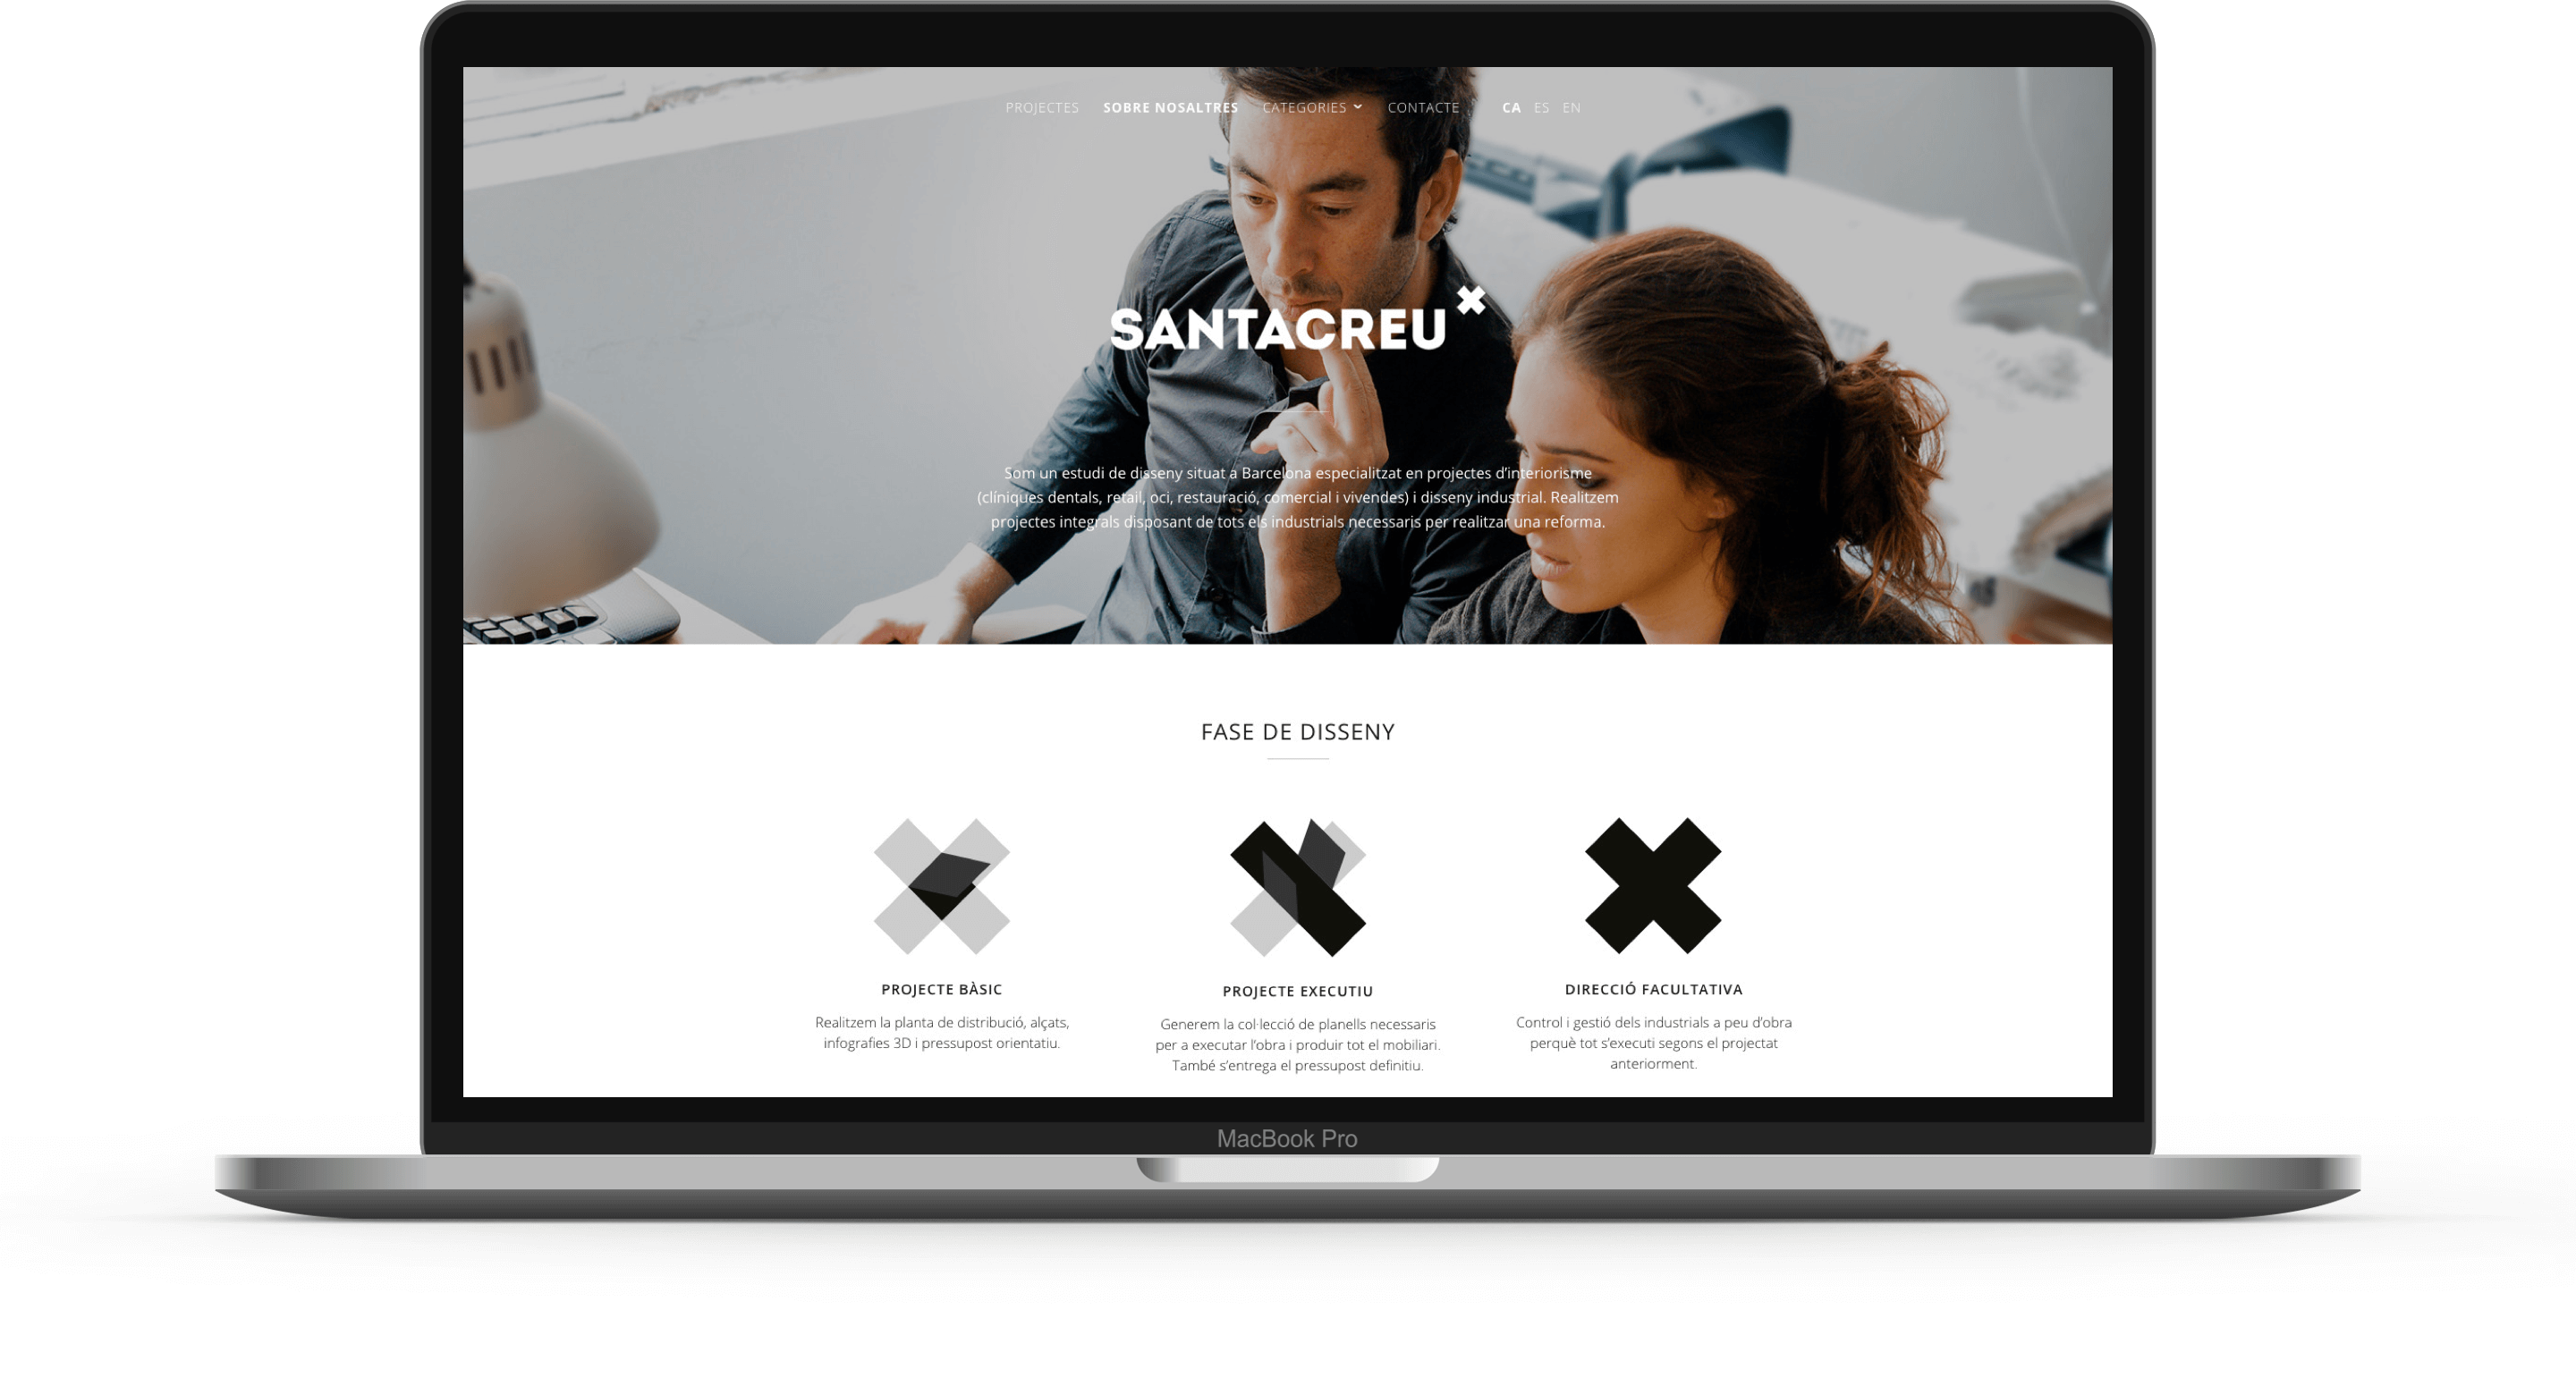 Santacreu Design | Ideamatic